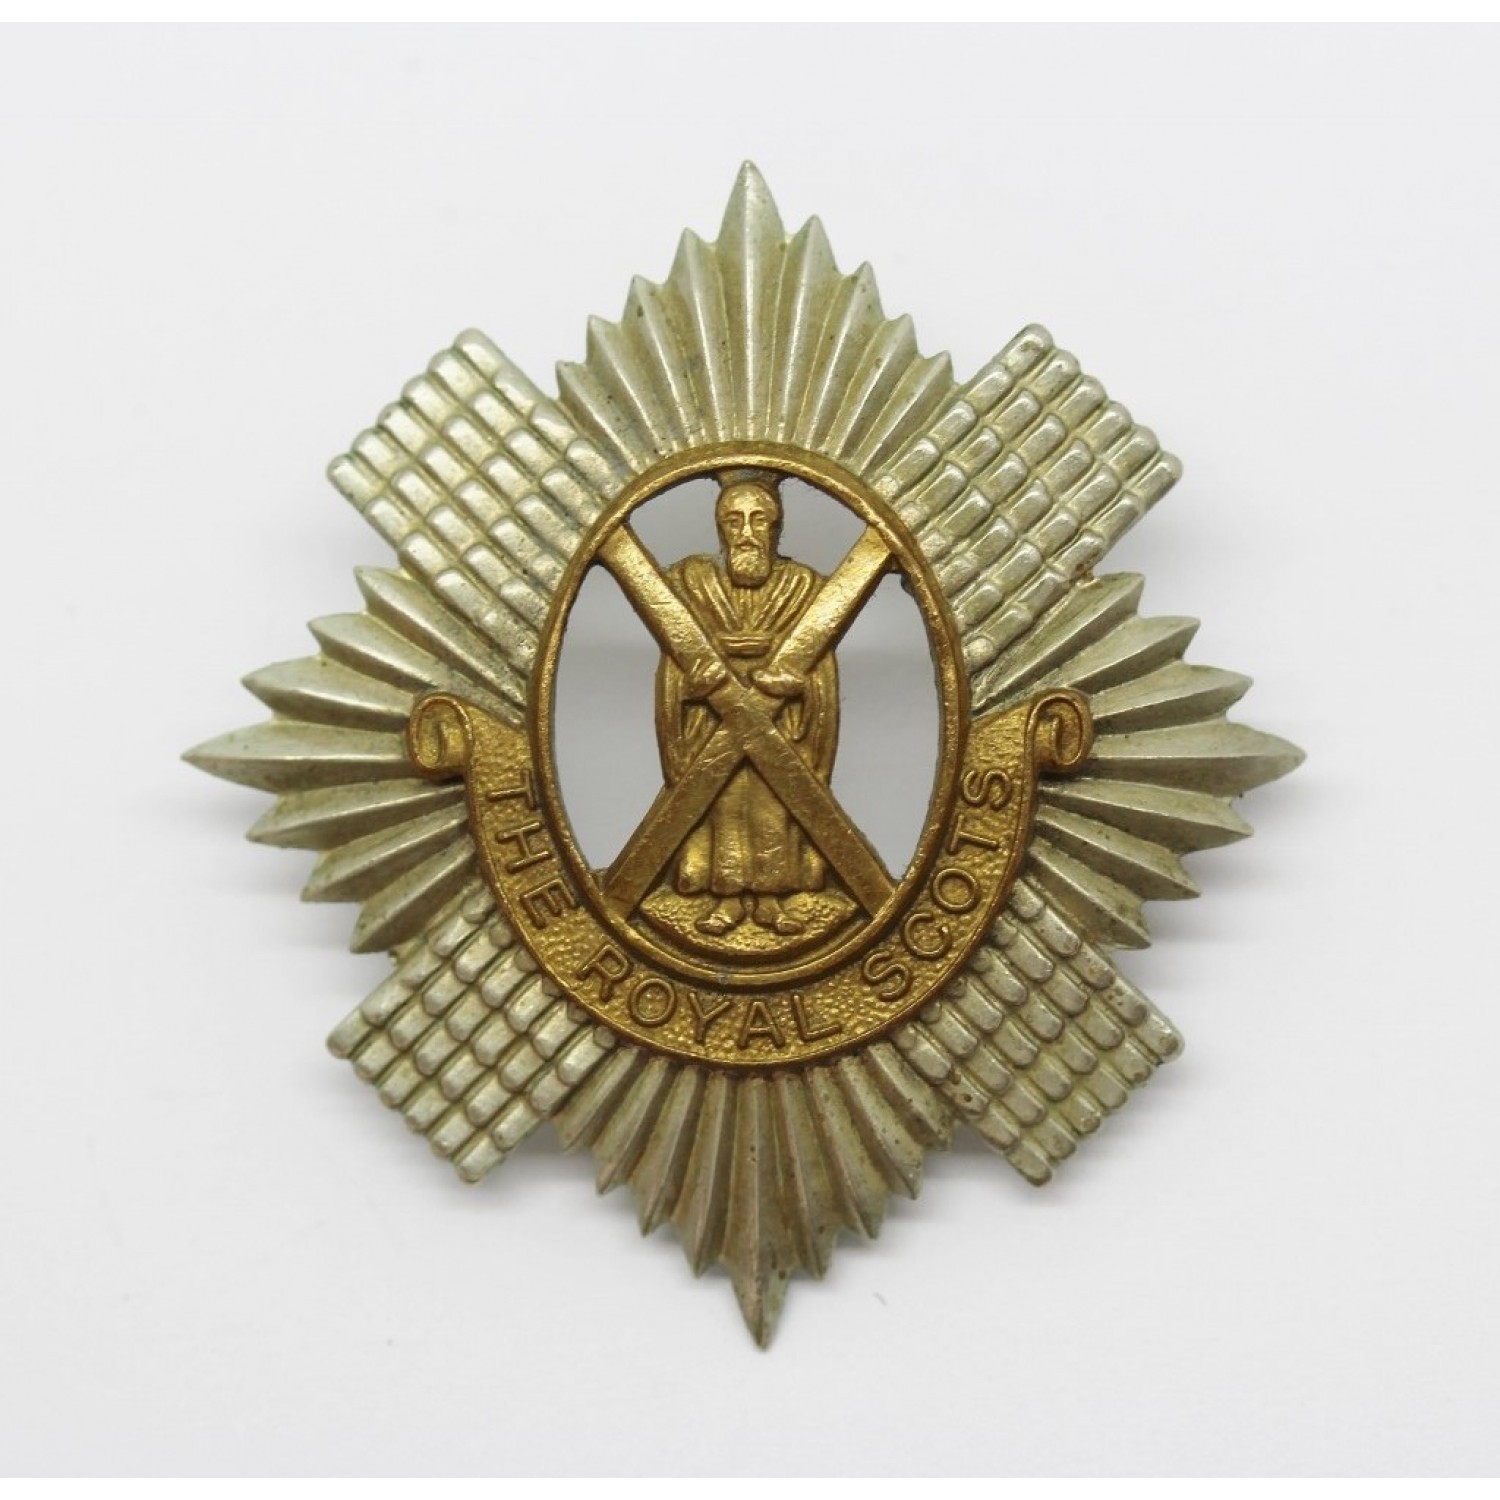 The Royal Scots Cap Badge